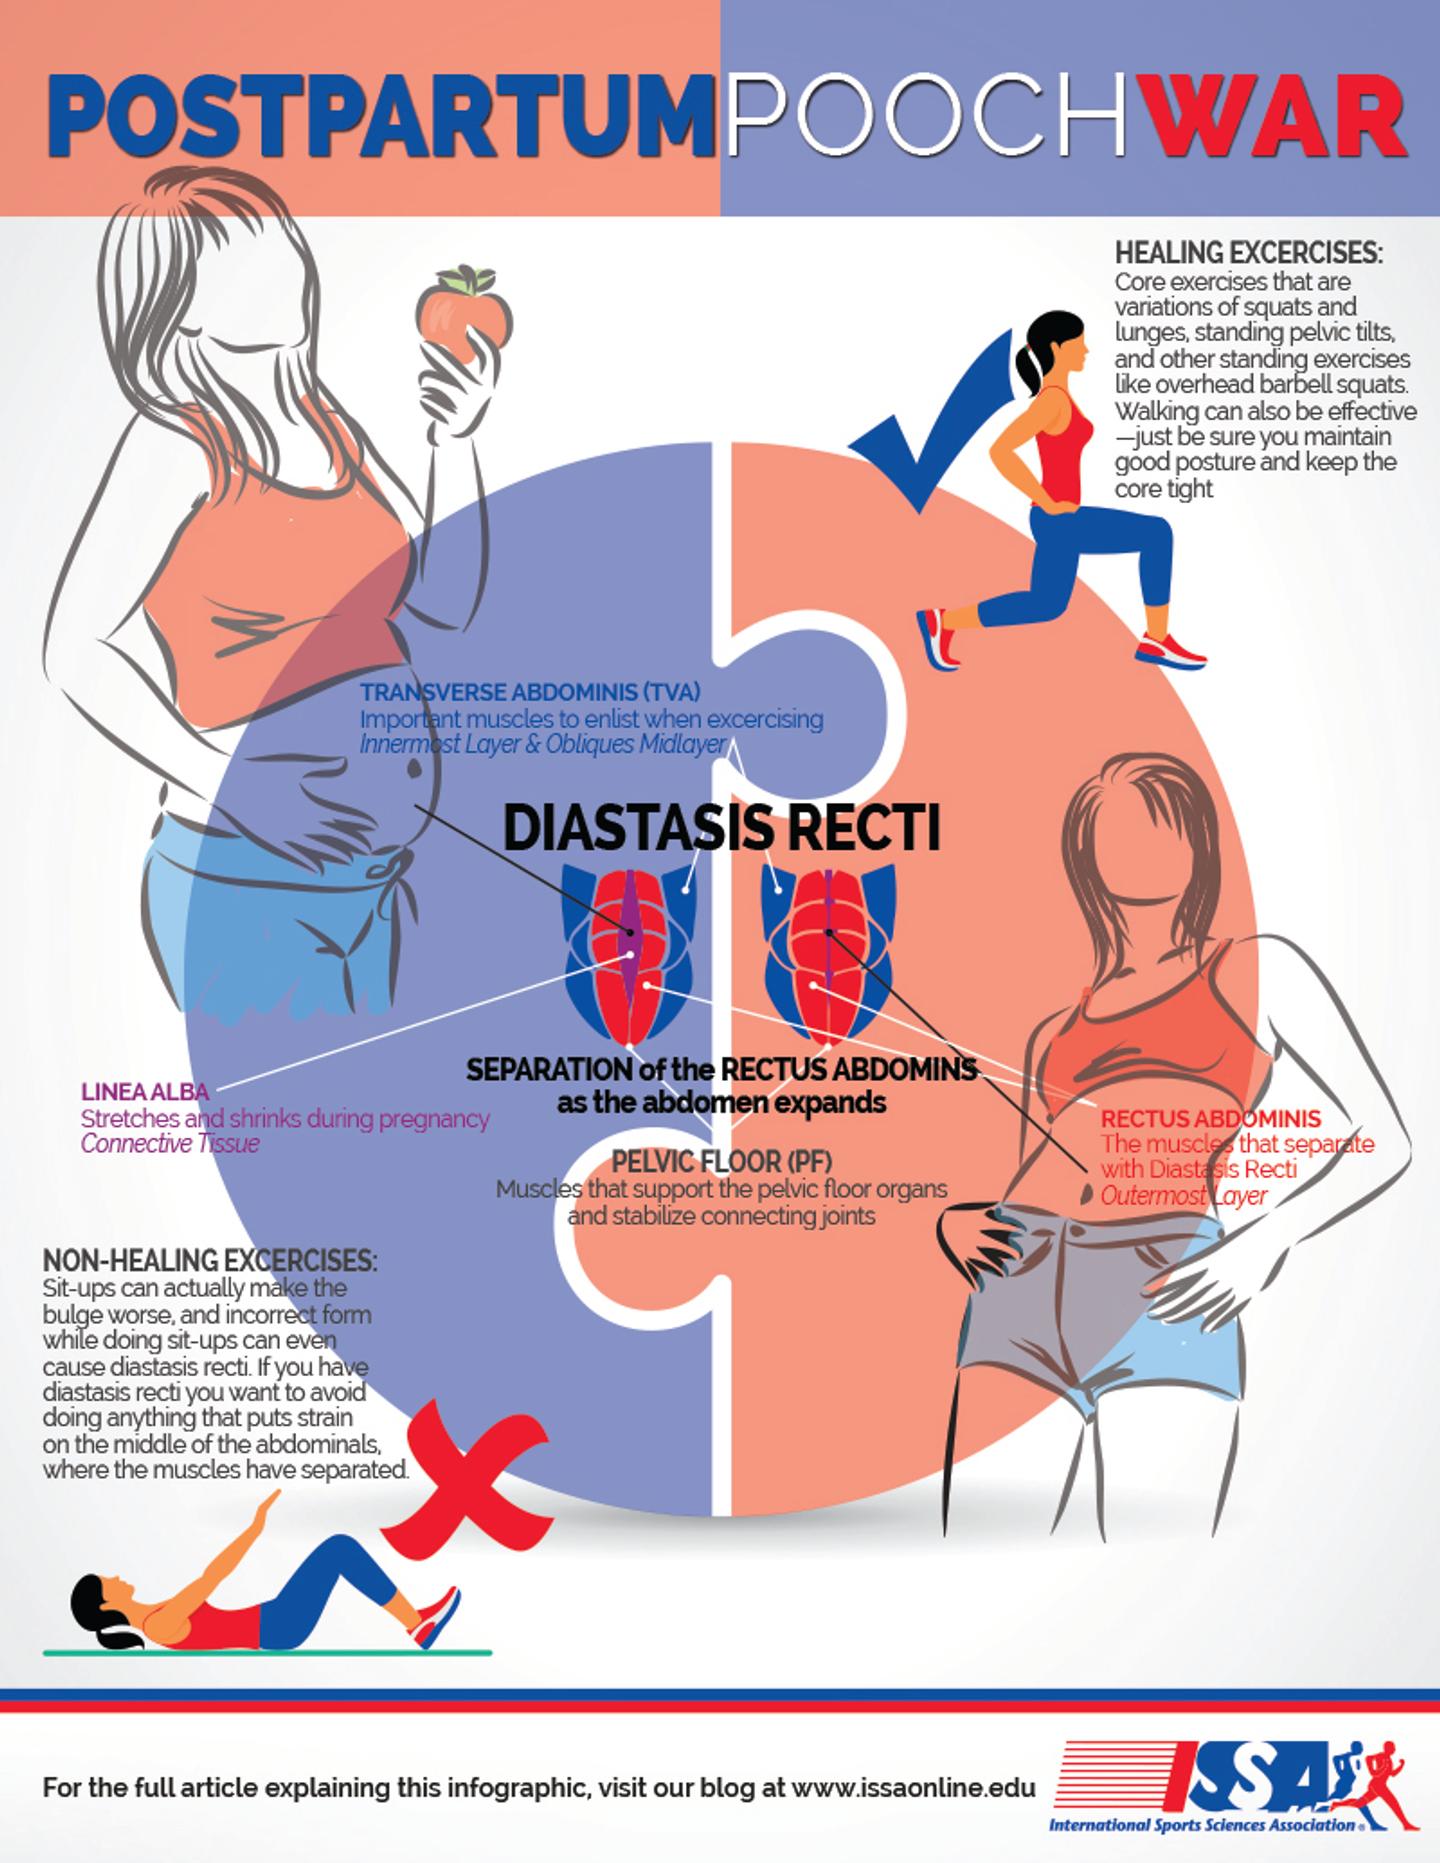 Postpartum infographic image